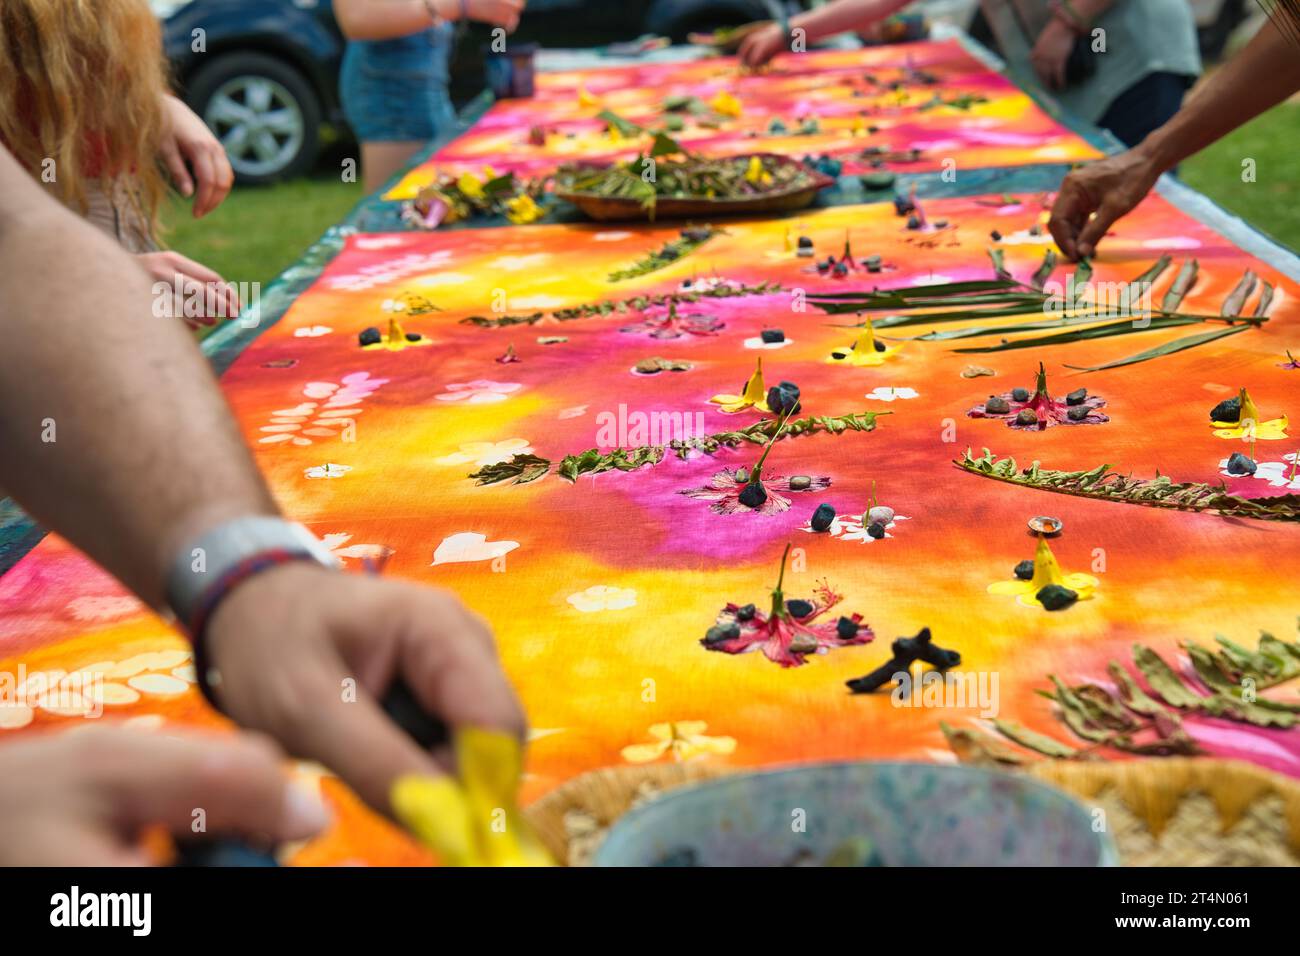 Hände entfernen Blätter und Blumen, nachdem die Stofffarbe getrocknet war, Mahe Seychelles 5 Stockfoto